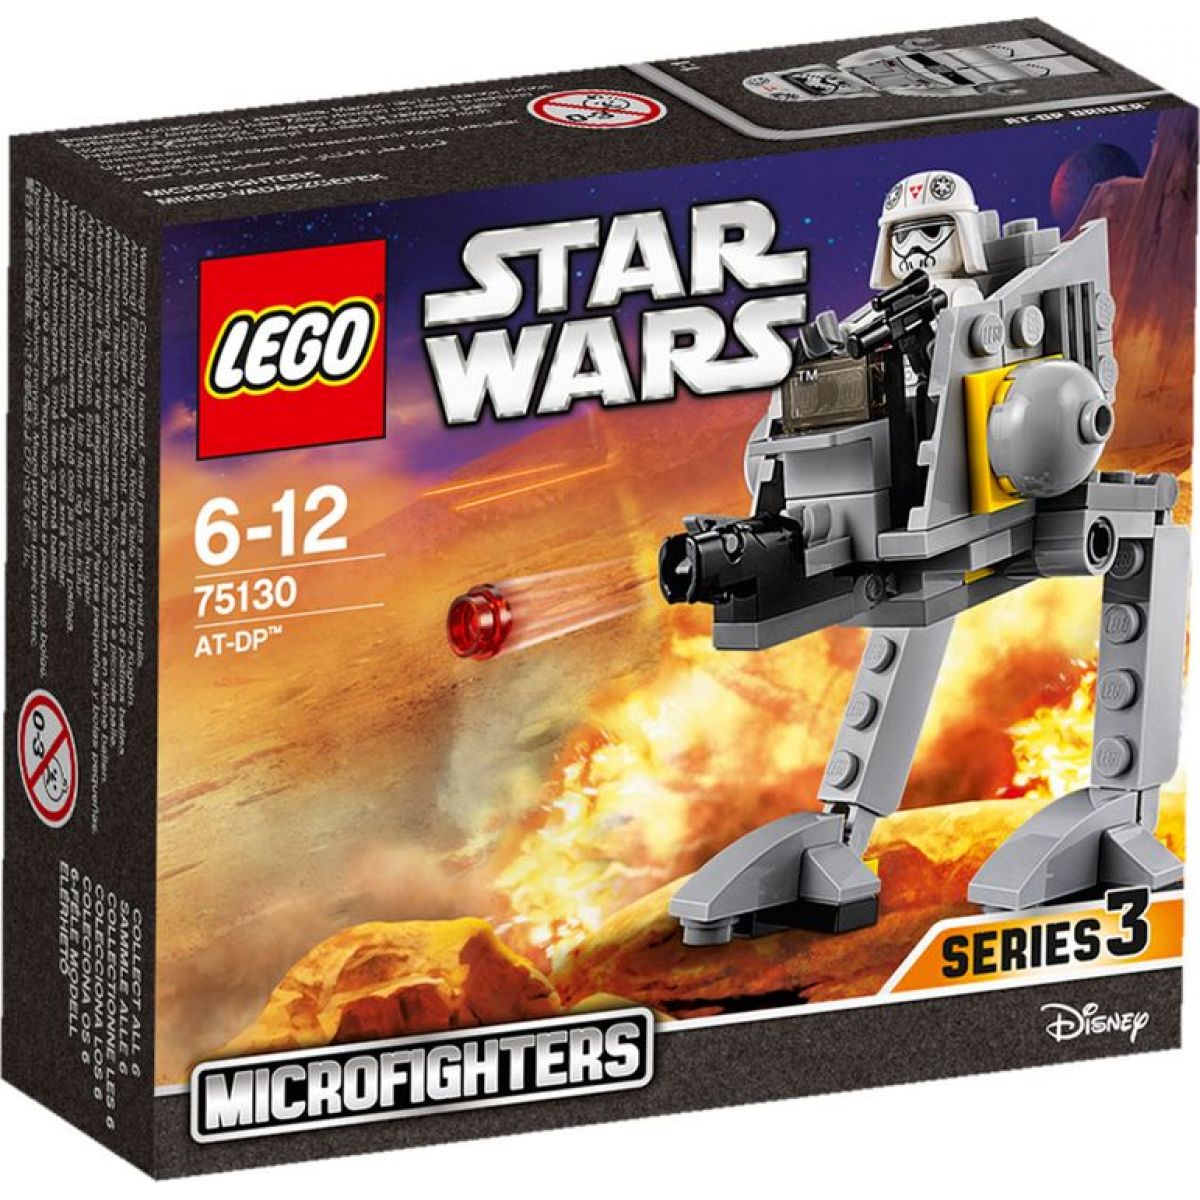 LEGO Star Wars 75130 AT-DP